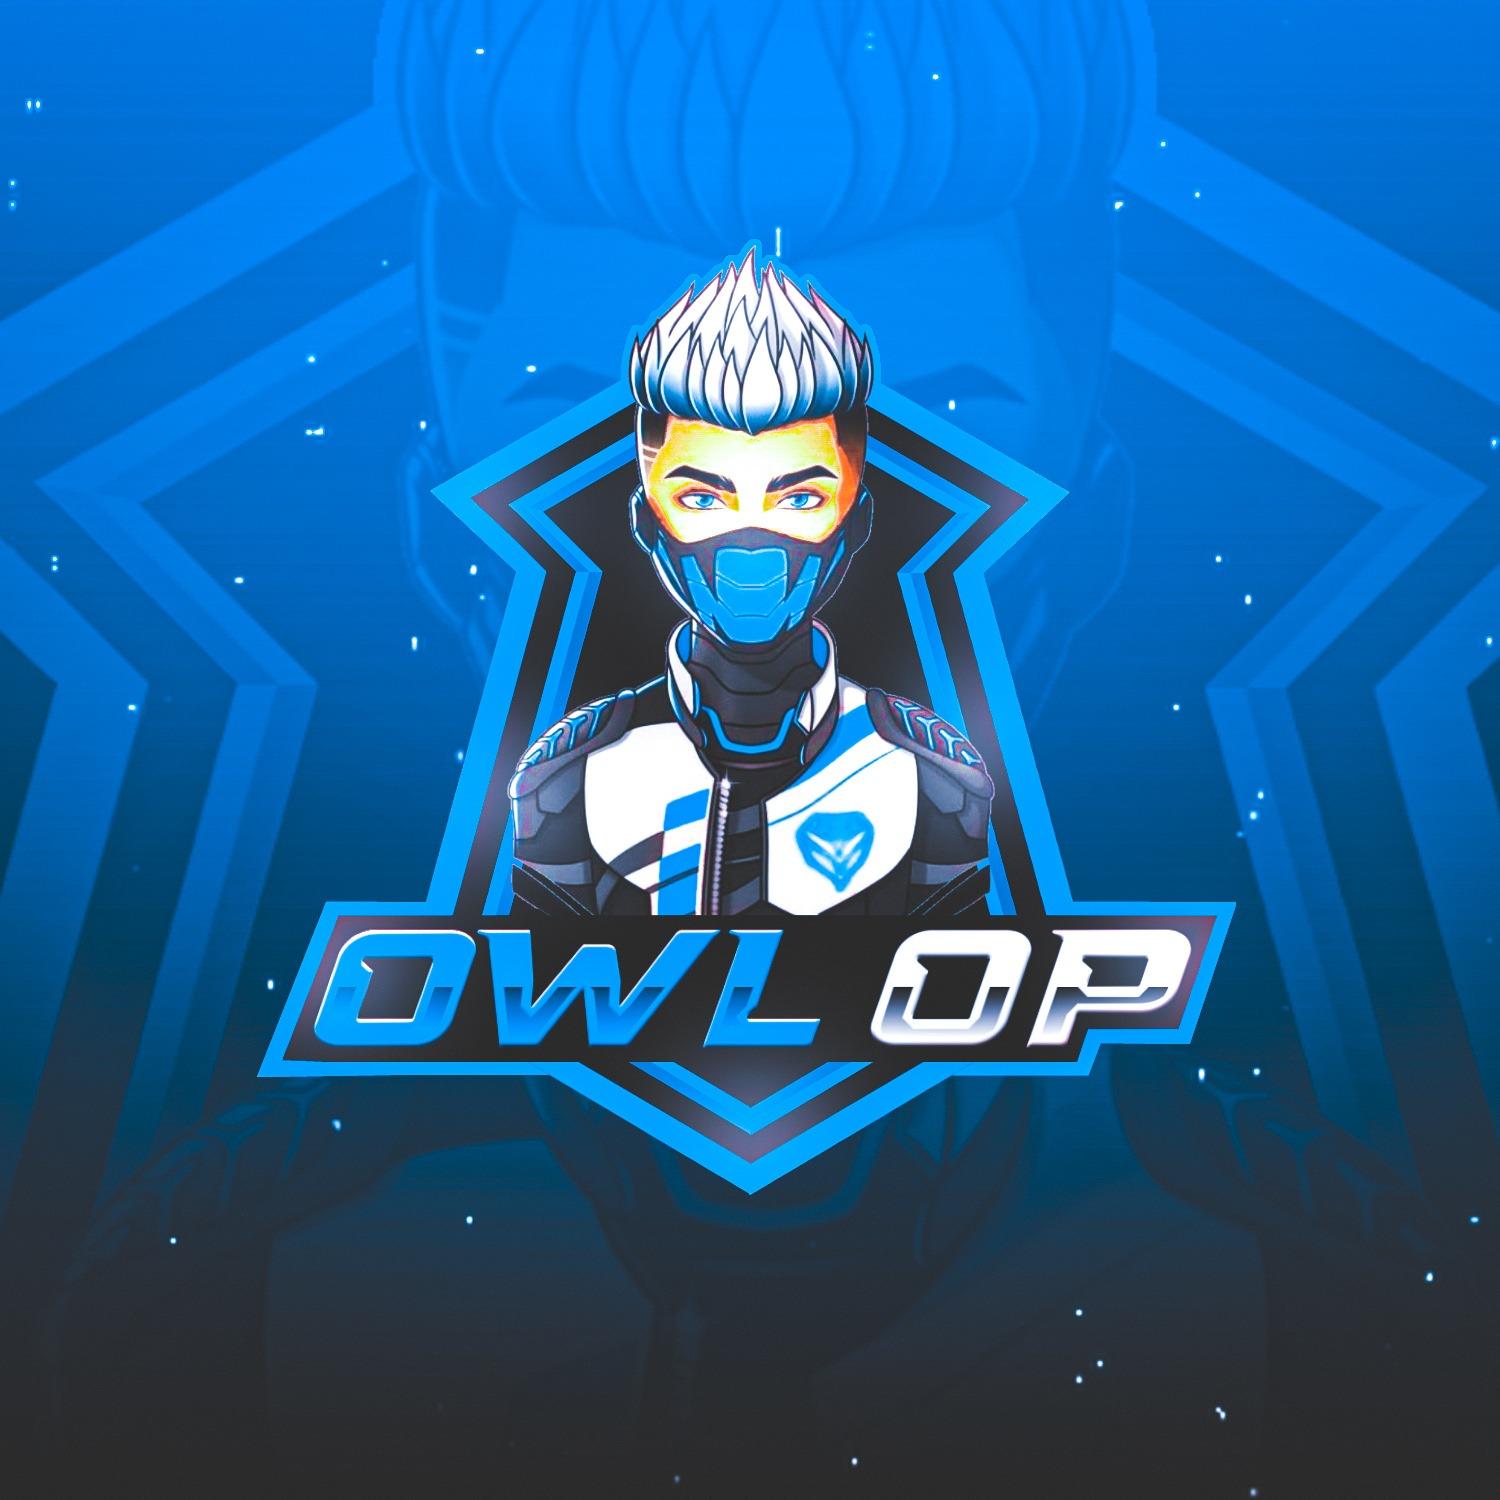 OWL OP